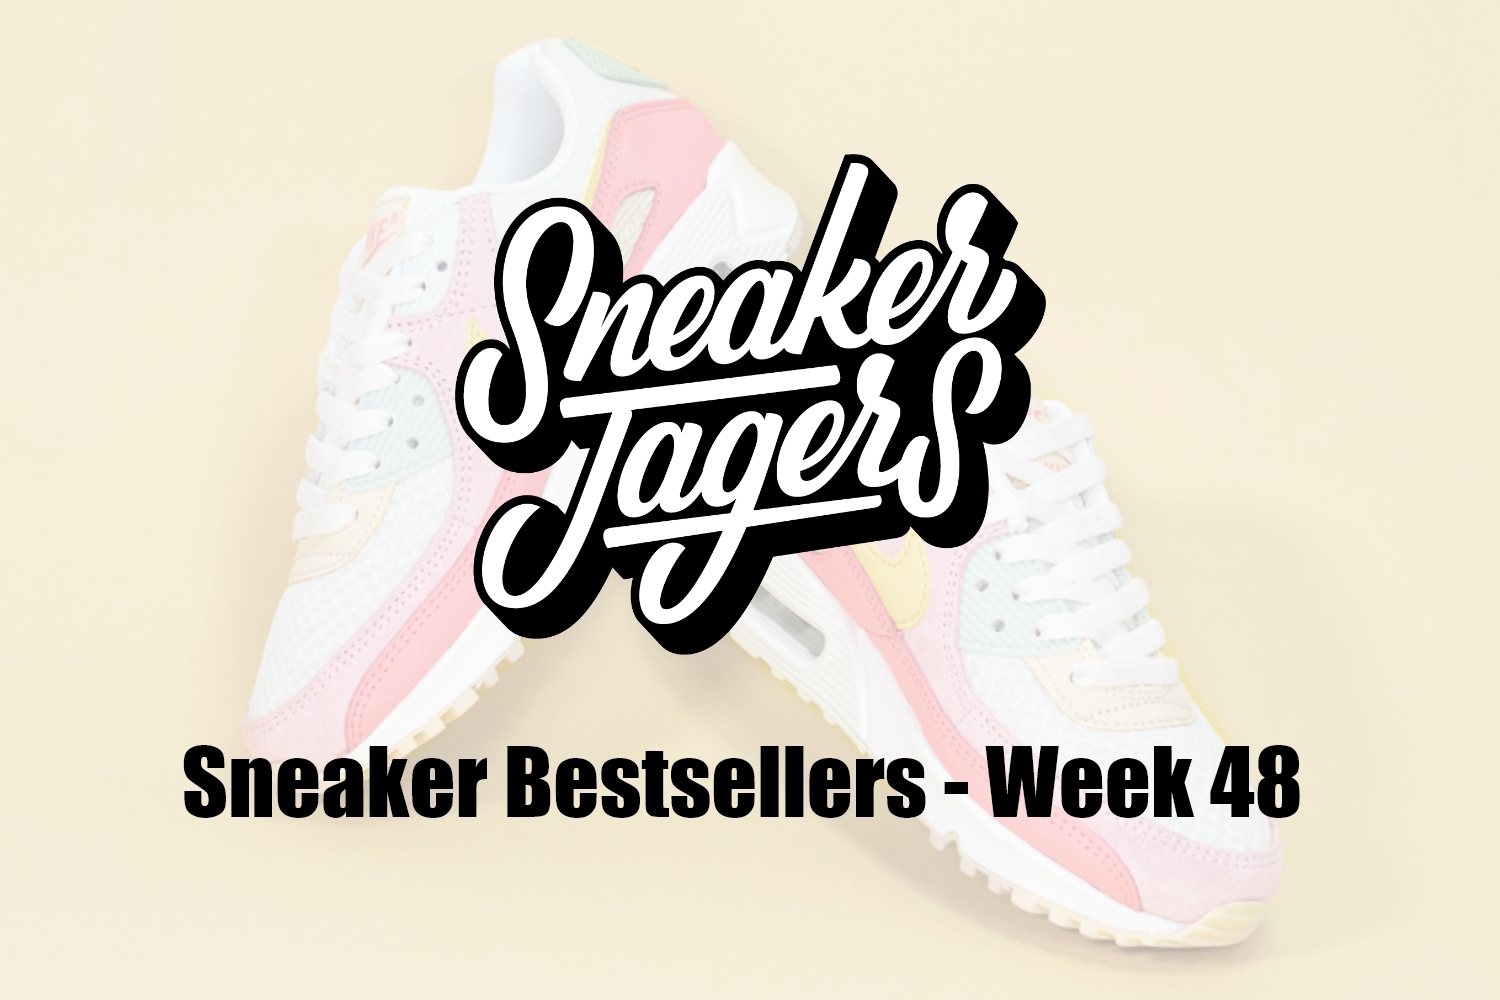 Our Sneaker Bestsellers - Week 48 - What's on Trend 📈